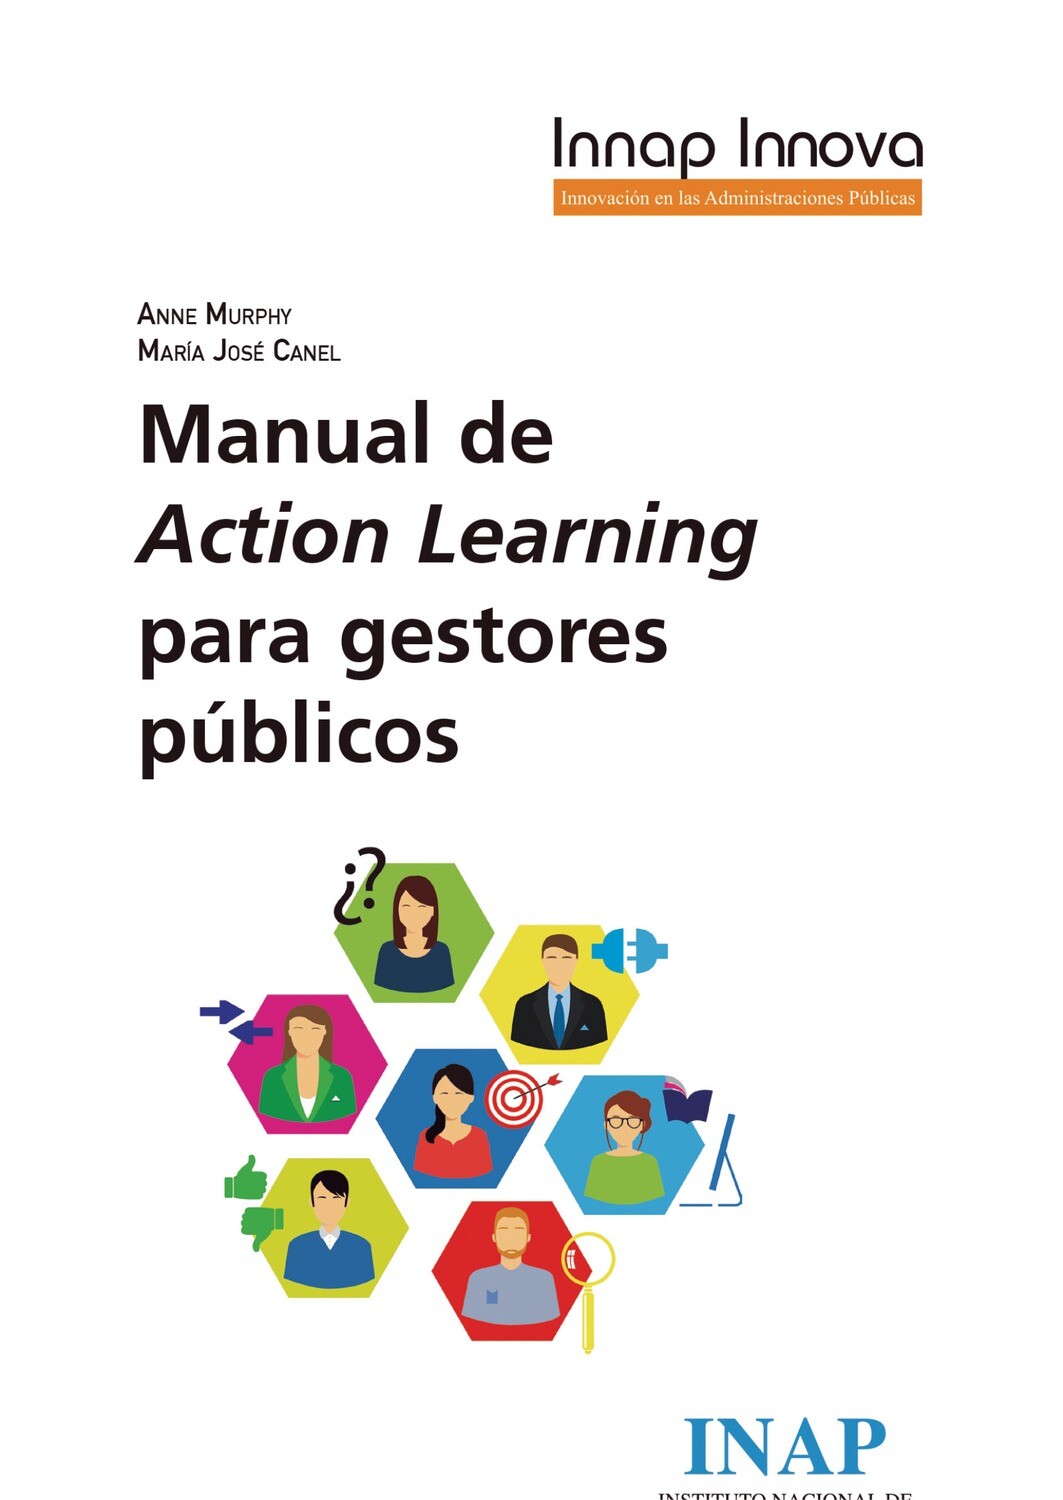 Manual de Action Learning para gestores públicos